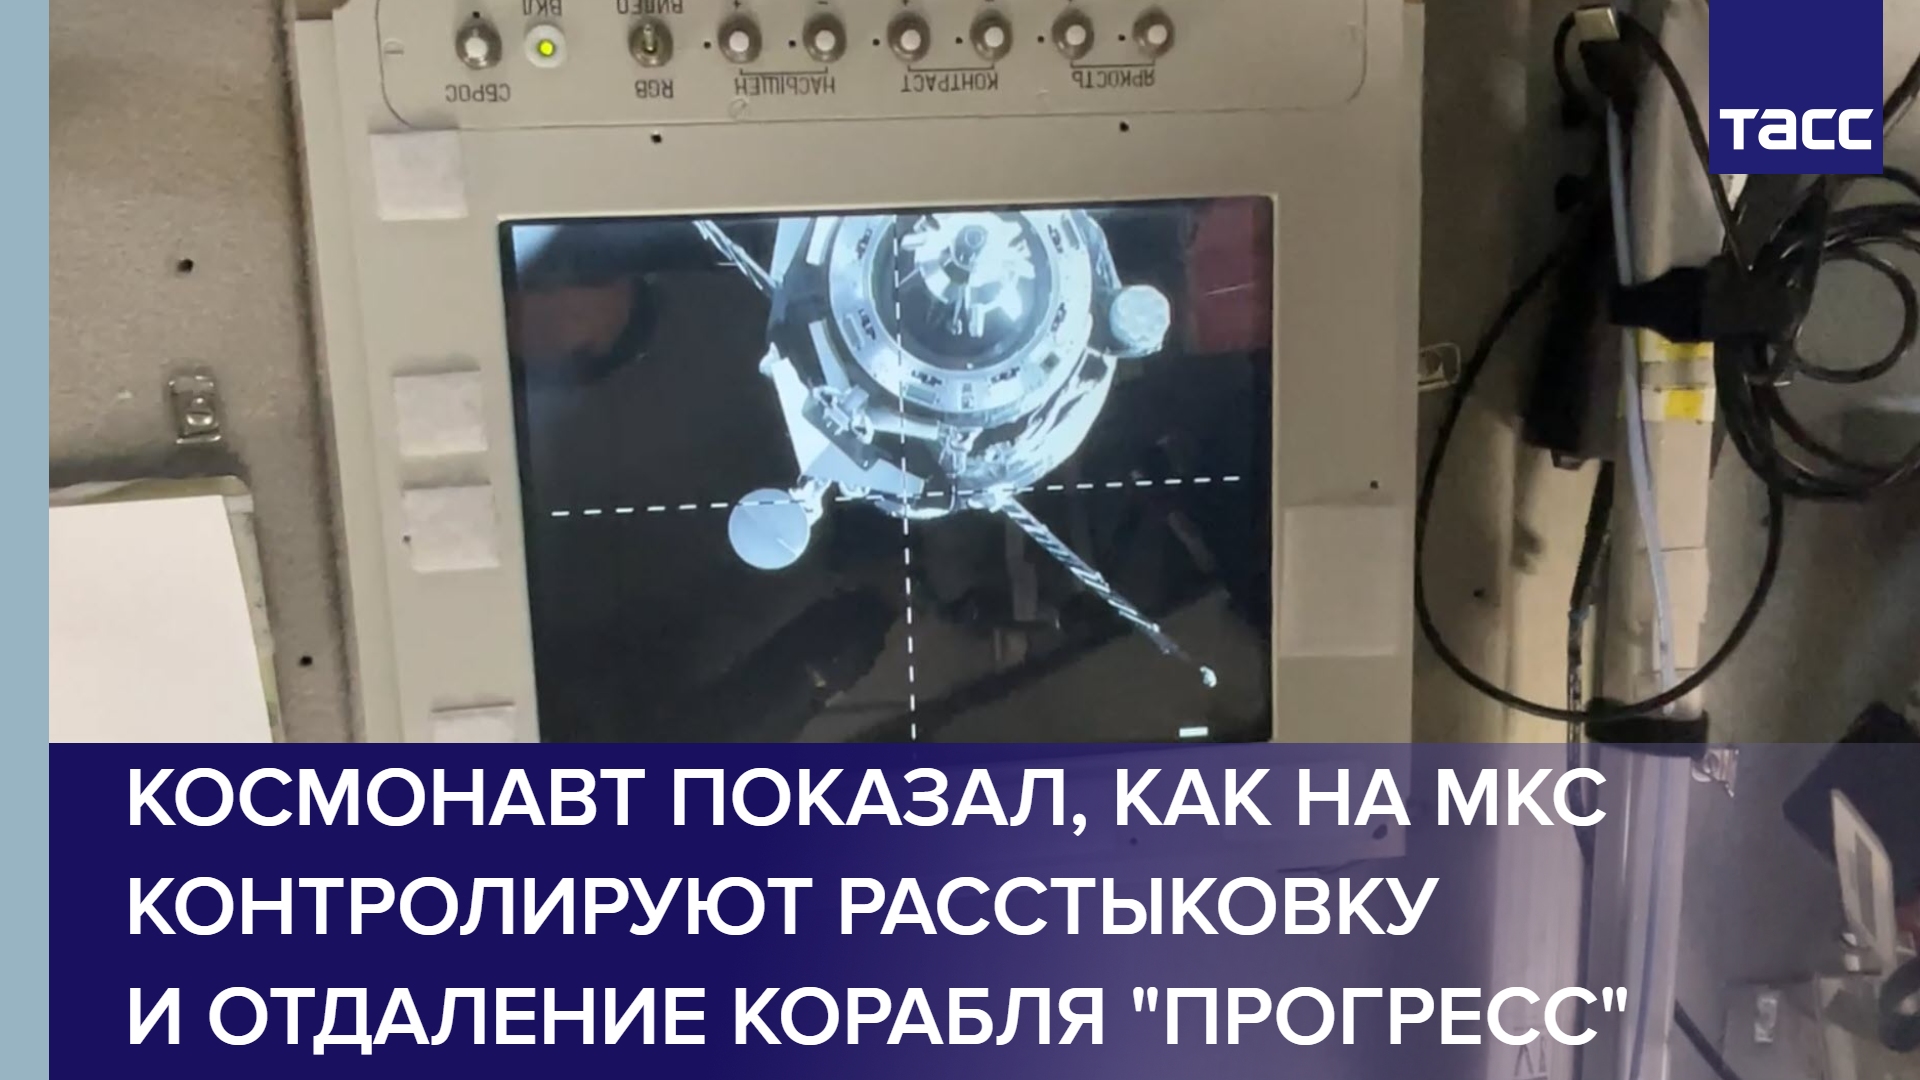 Космонавт показал, как на МКС контролируют расстыковку и отдаление корабля "Прогресс" #shorts